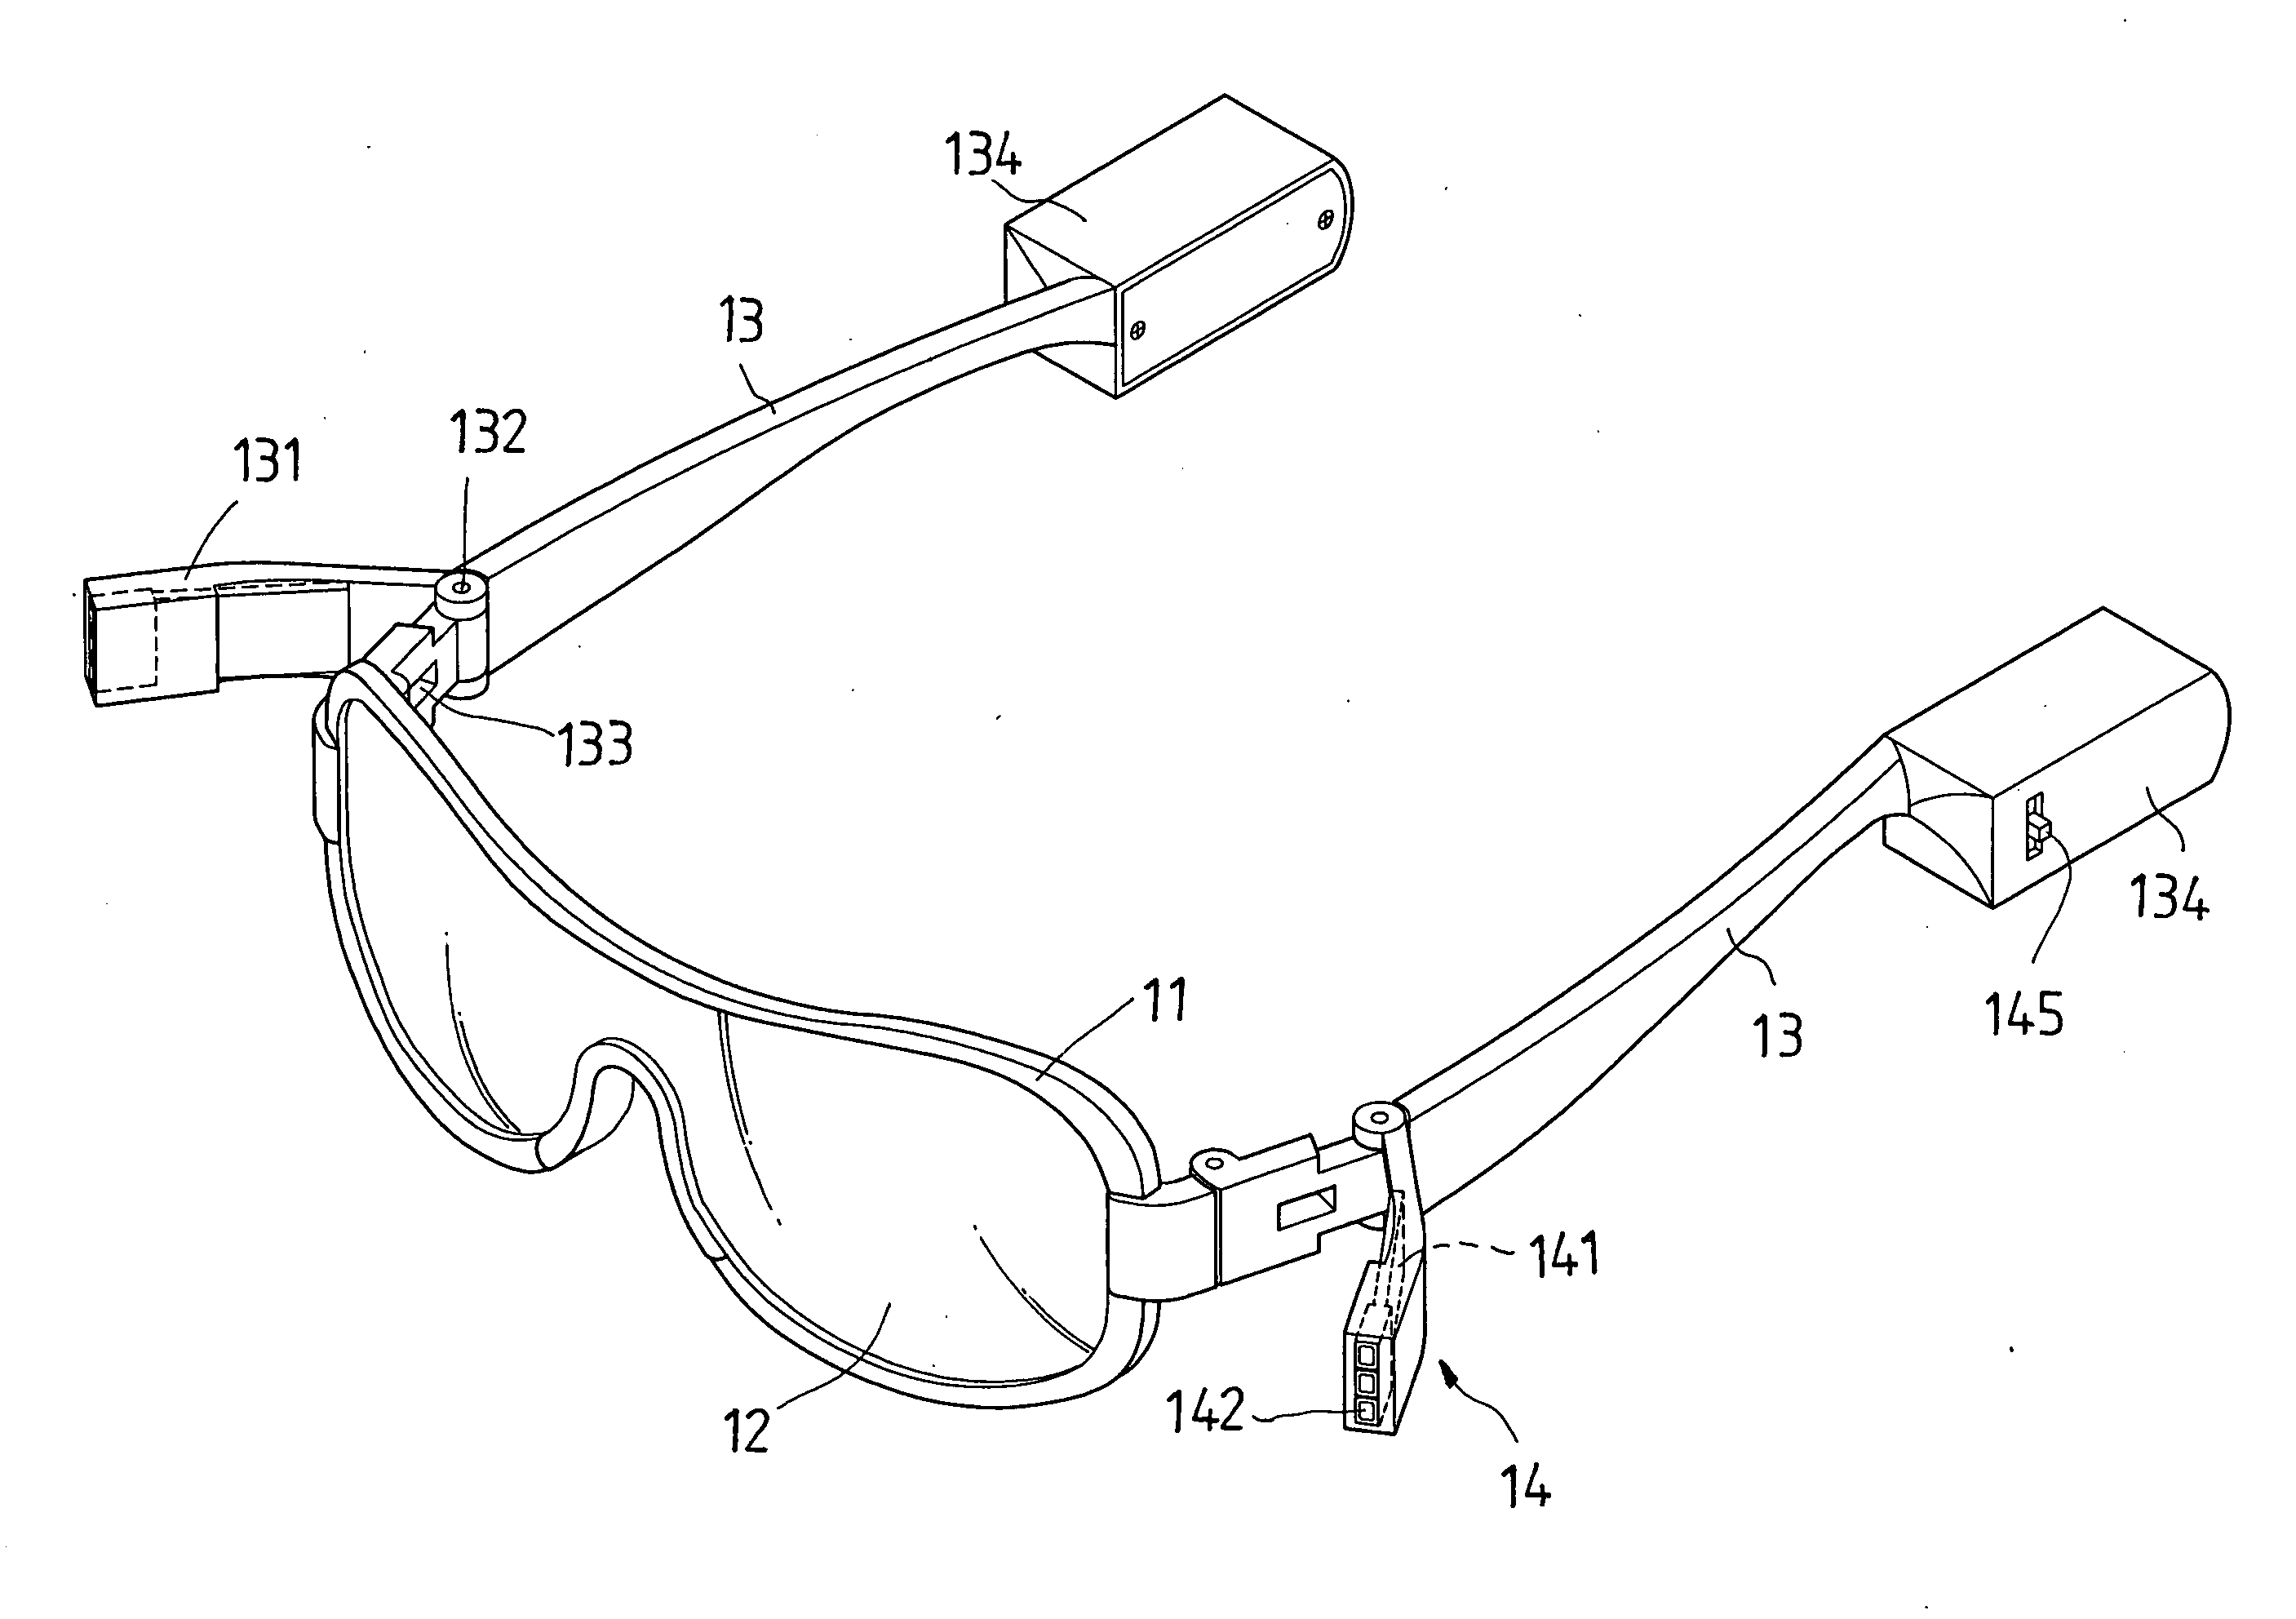 Illuminating device of eyeglasses